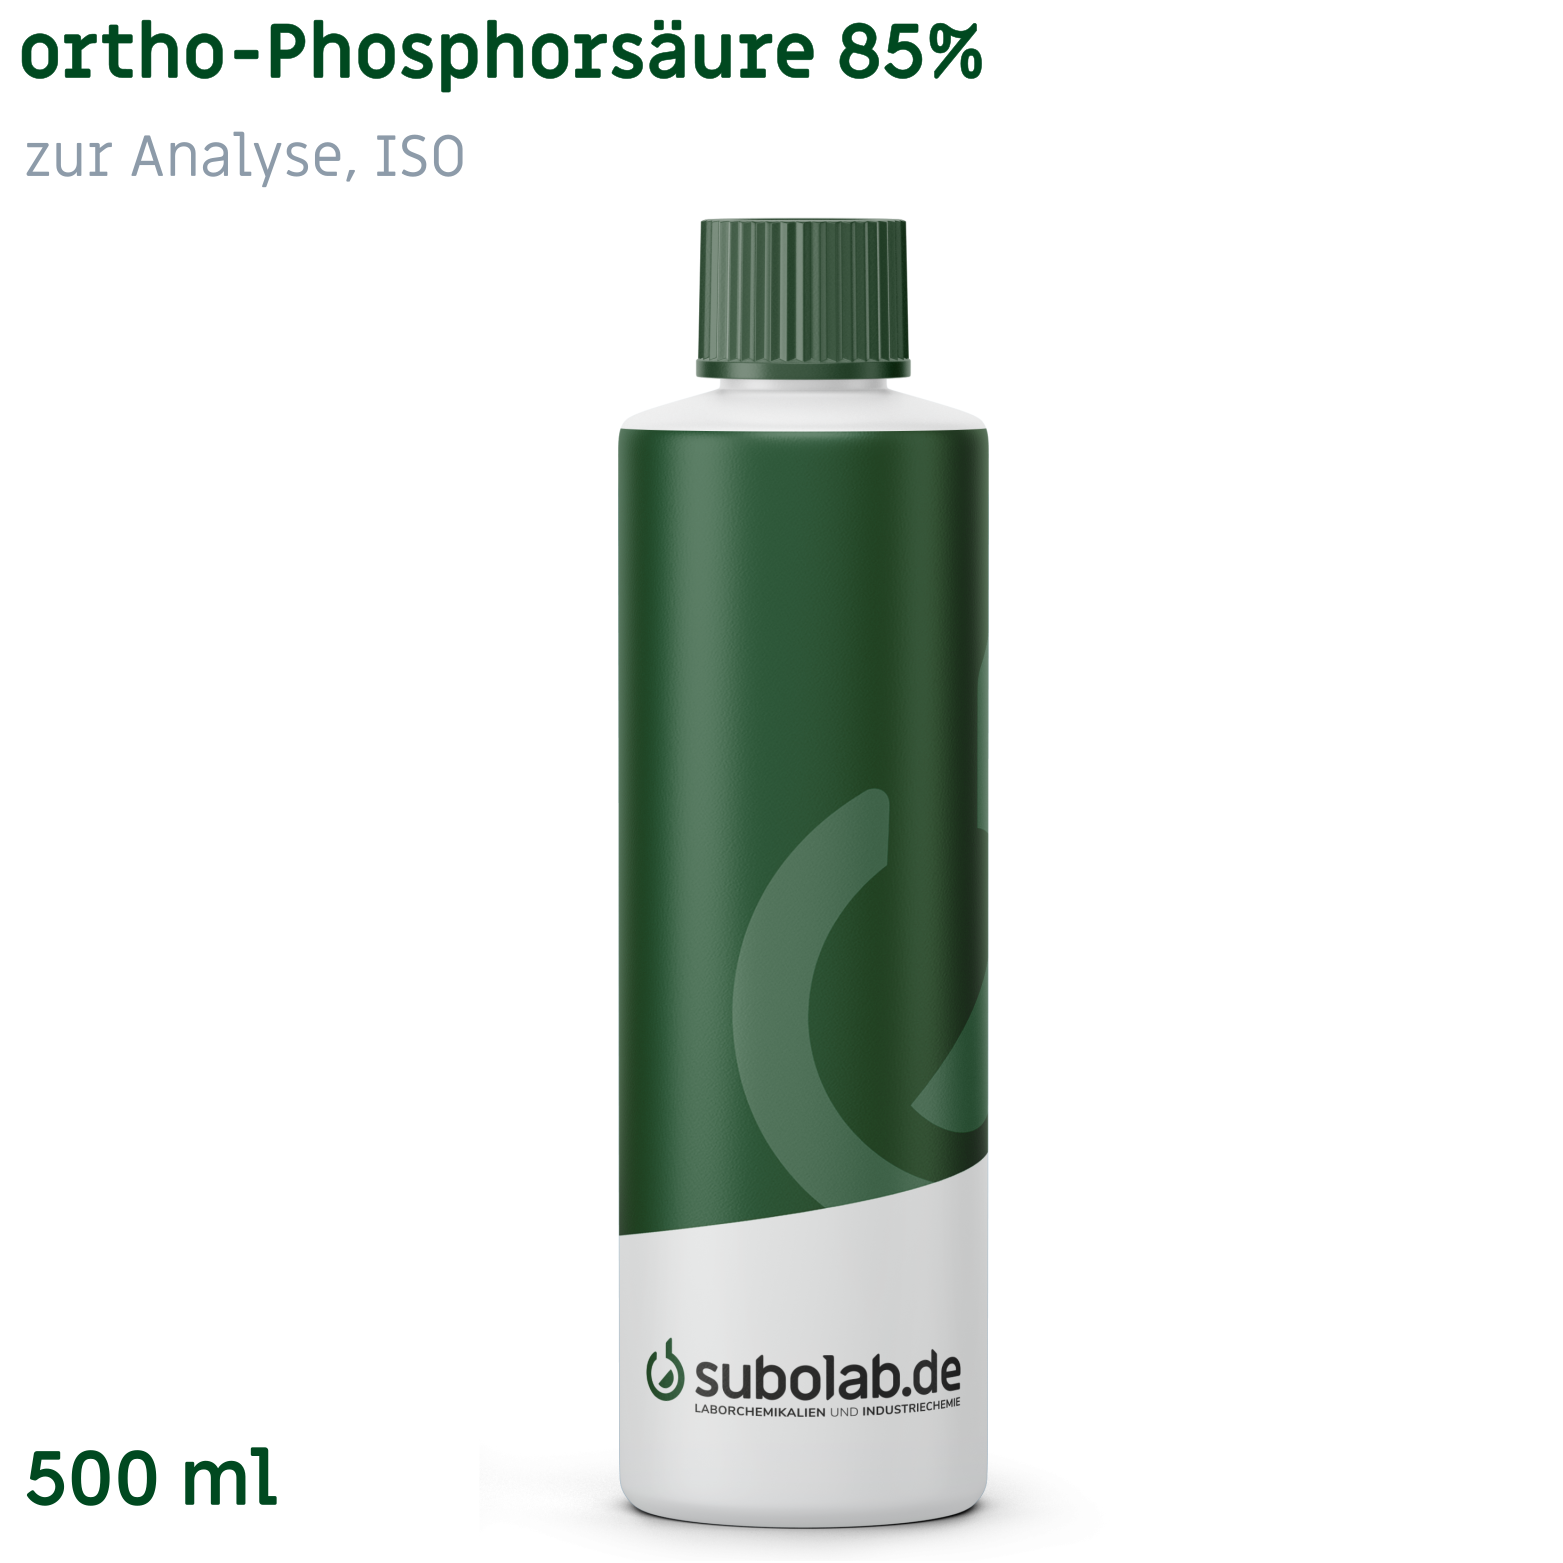 Bild von ortho-Phosphorsäure 85% zur Analyse, ISO (500 ml)